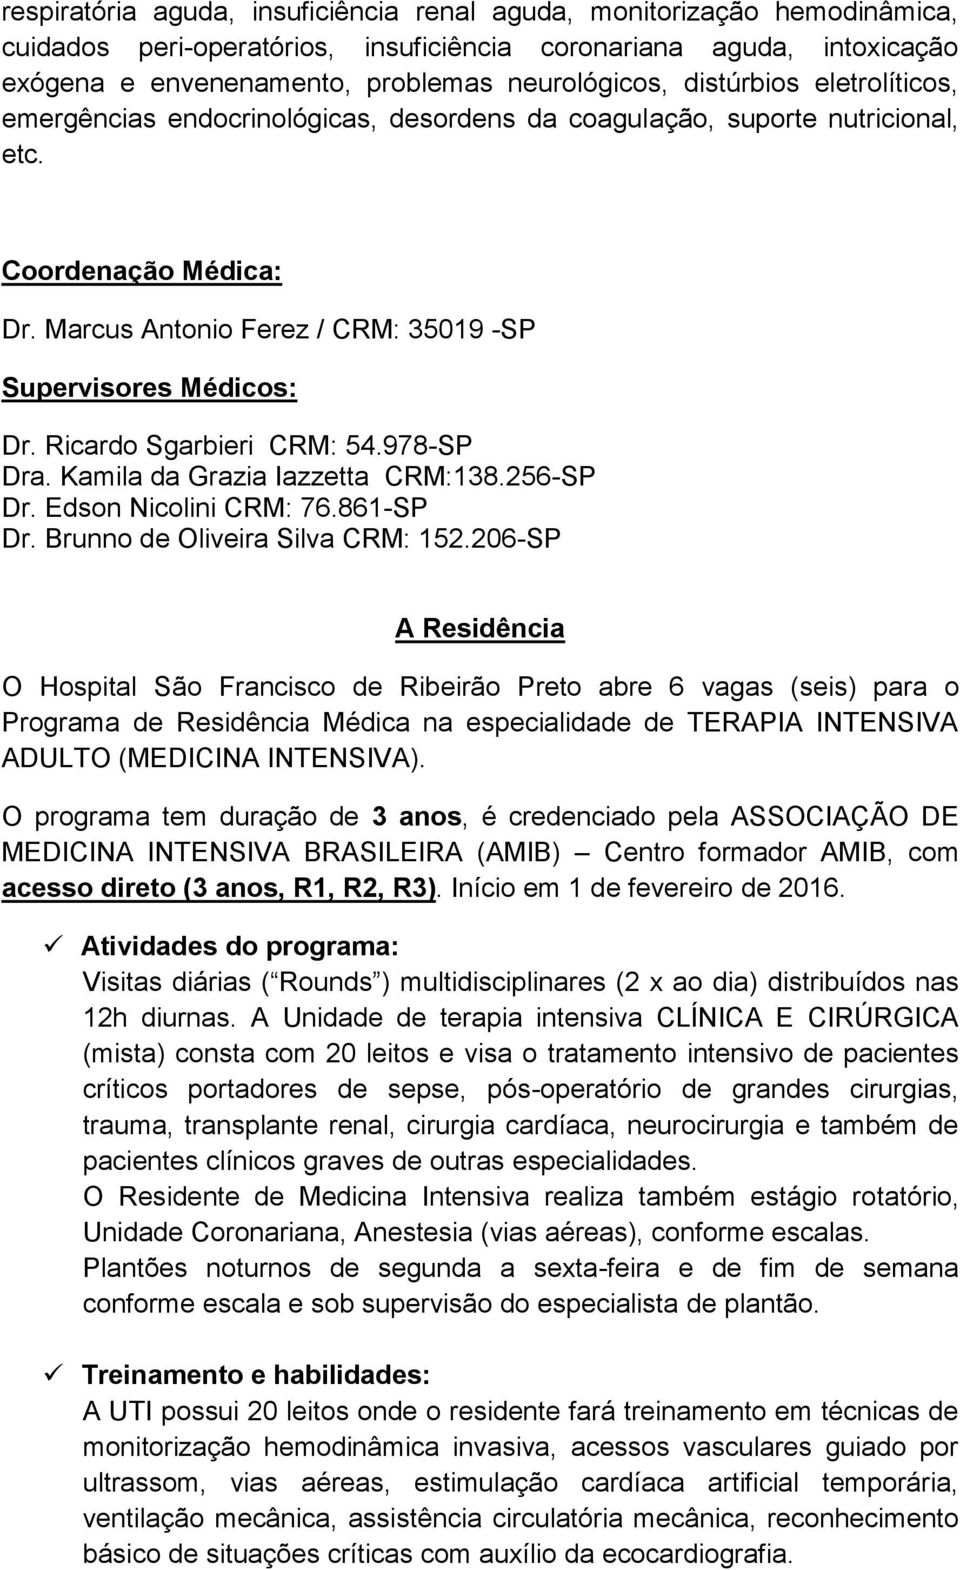 Ricardo Sgarbieri CRM: 54.978-SP Dra. Kamila da Grazia Iazzetta CRM:138.256-SP Dr. Edson Nicolini CRM: 76.861-SP Dr. Brunno de Oliveira Silva CRM: 152.